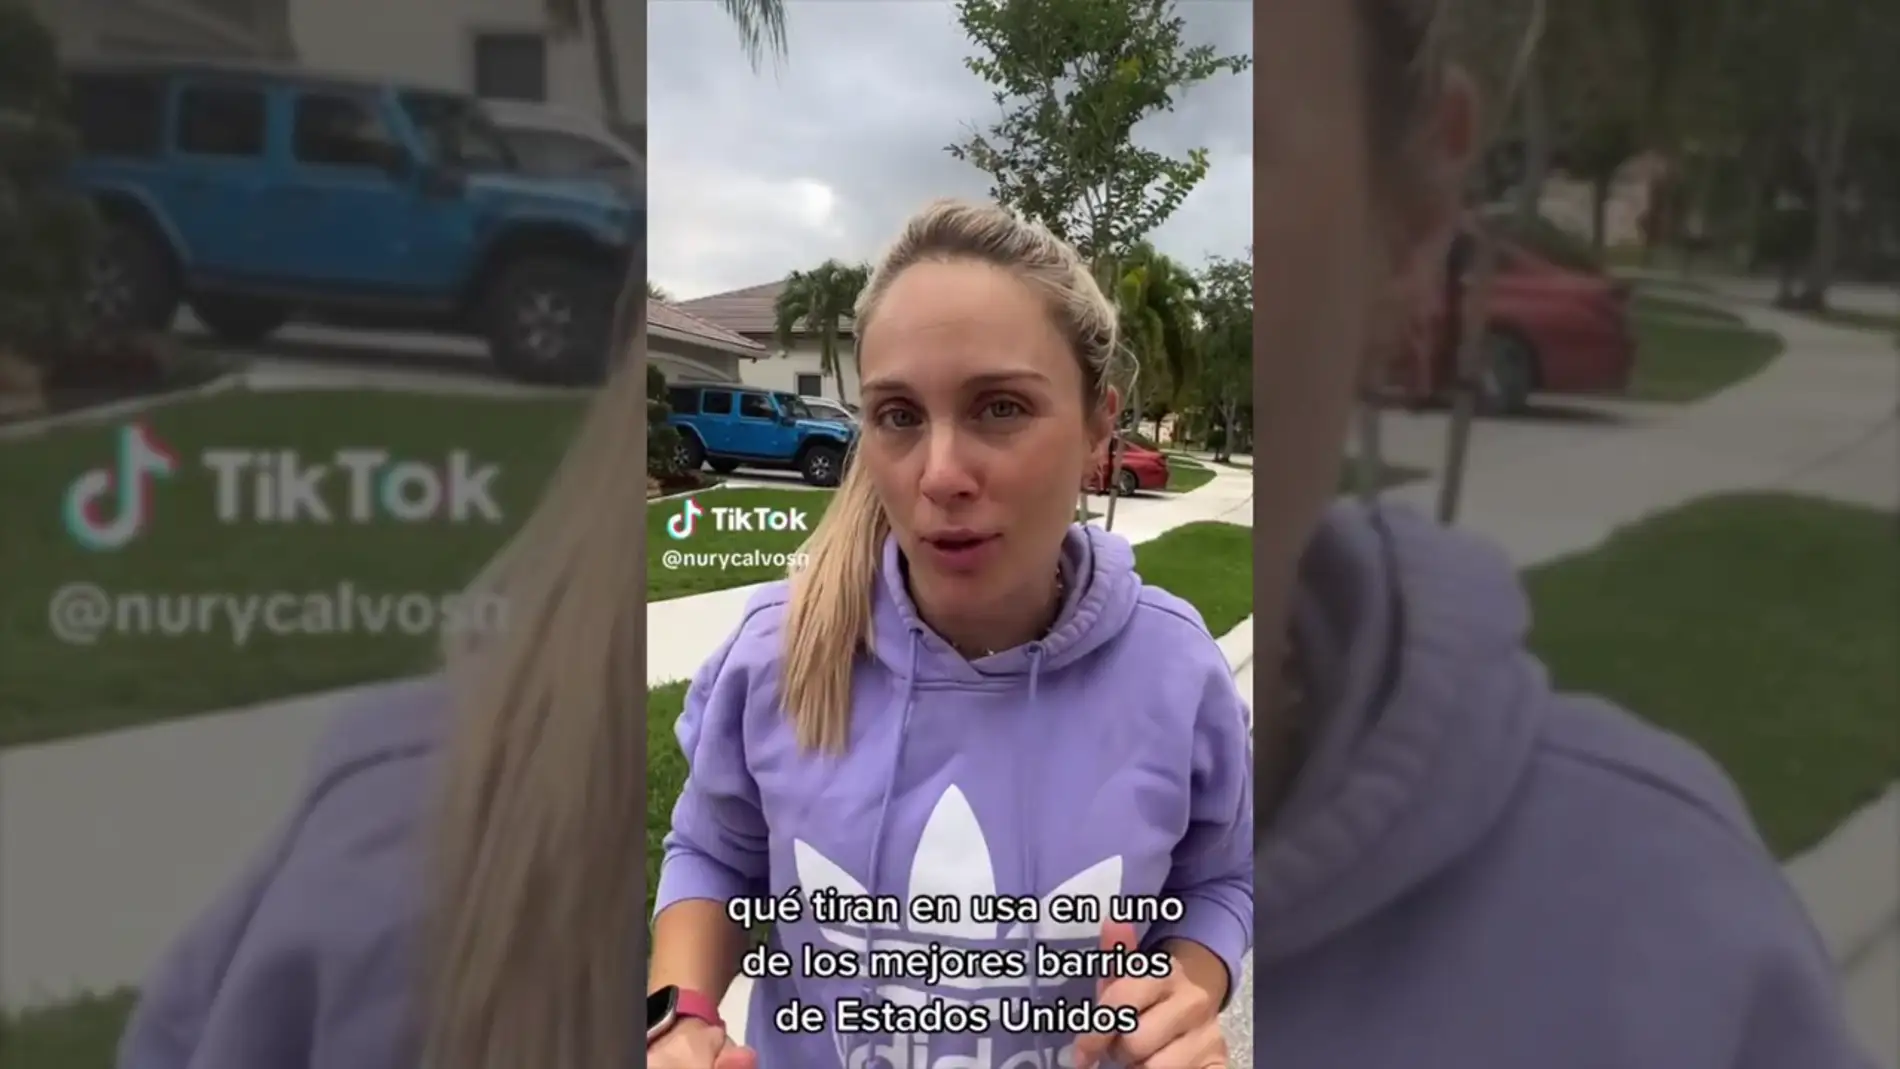 Una joven española cuenta en TikTok todo lo que se tira a la basura un barrio de clase alta en EE.UU: "Lavadoras, aspiradoras, patinetes..."